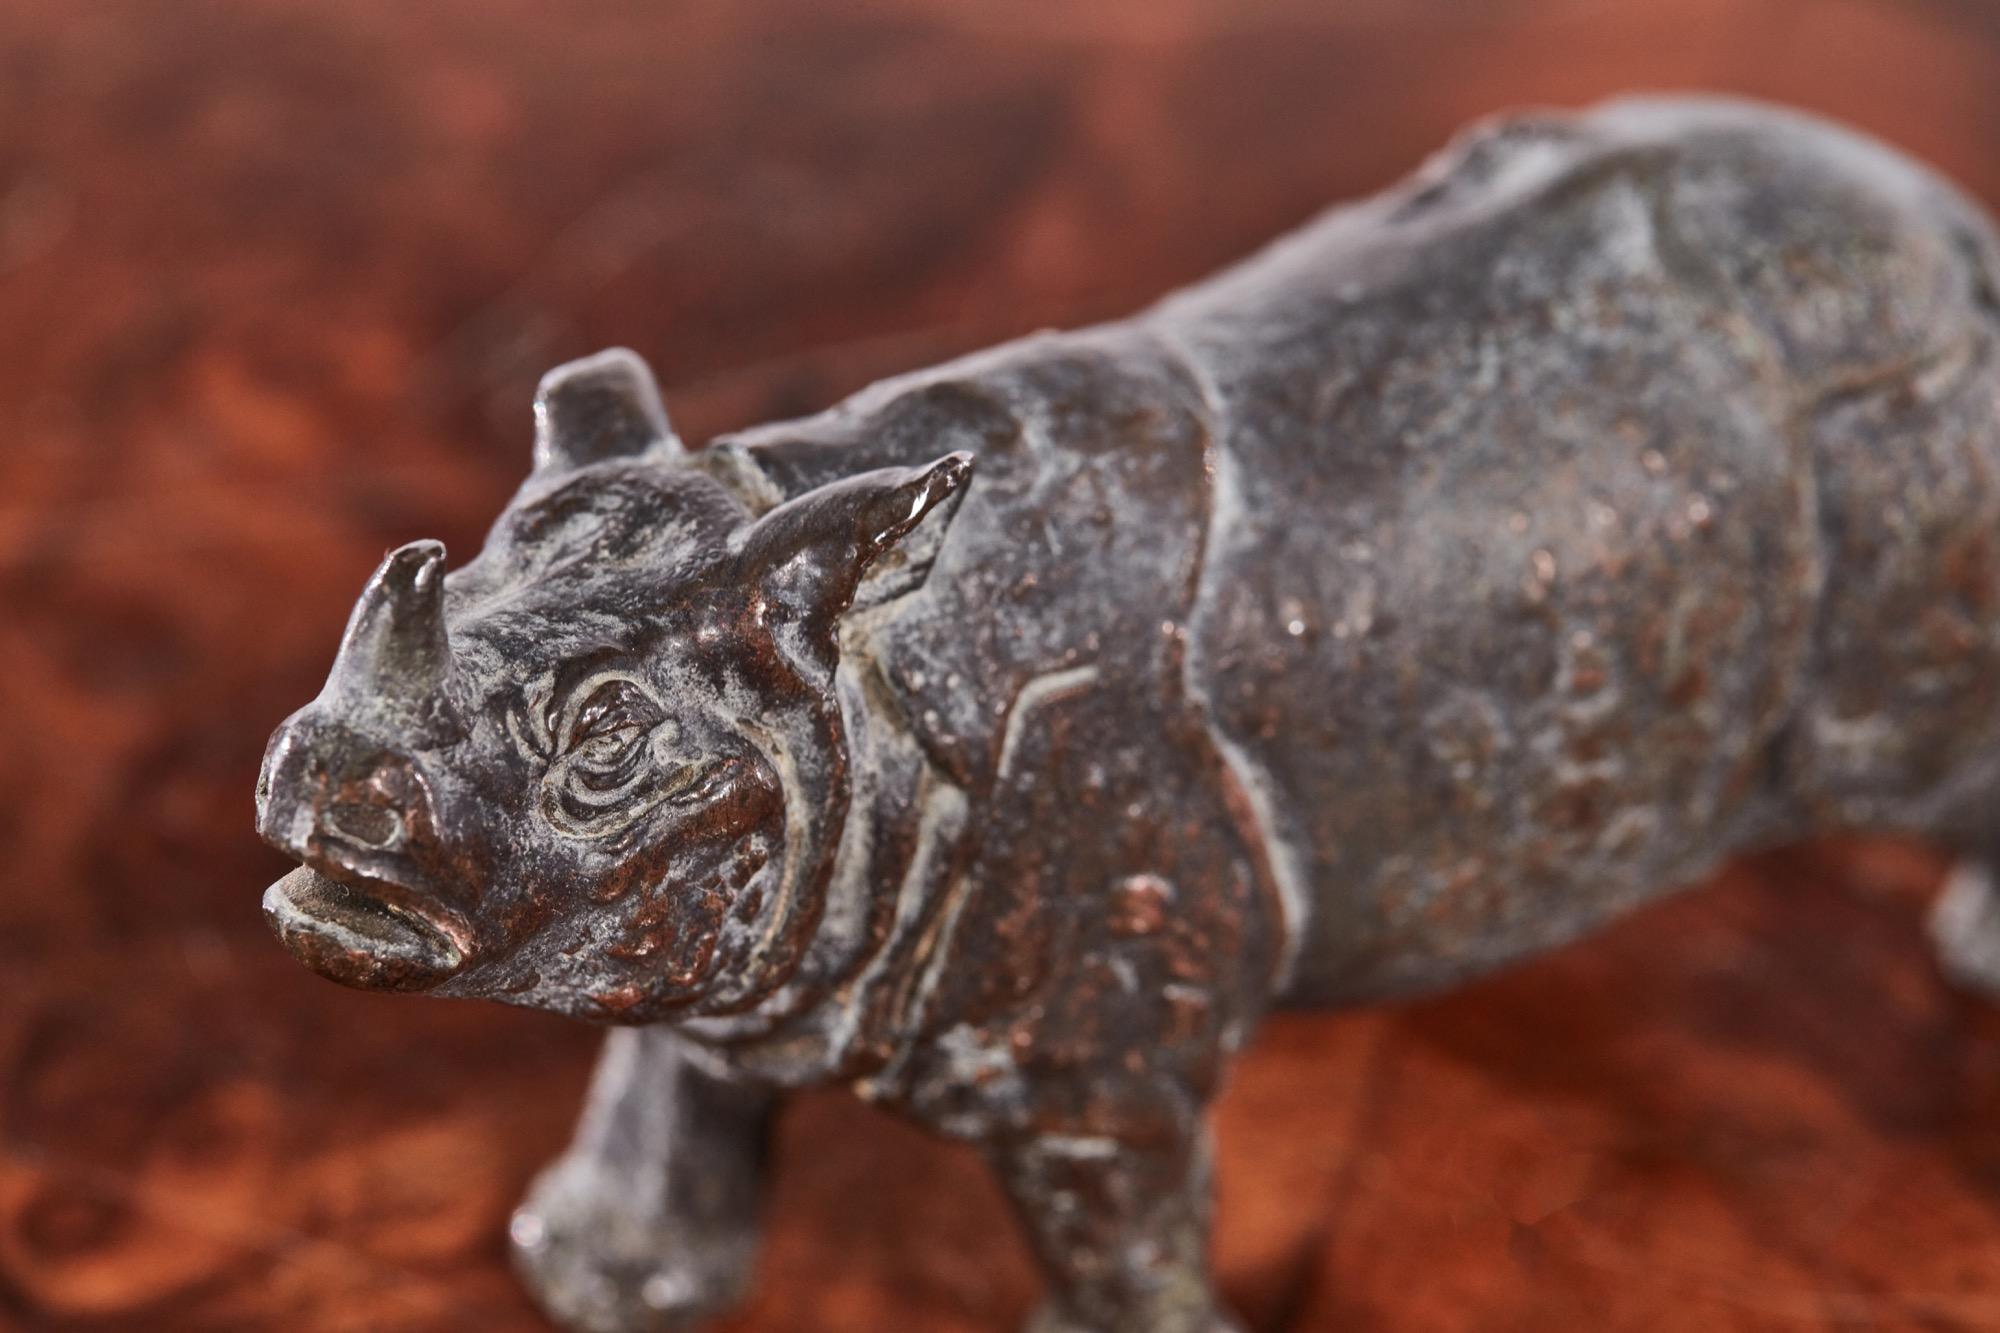 Antikes Miniatur-Nashorn aus Bronze, entworfen und gefertigt nach höchstem Standard und in schönem Originalzustand.

Ein sehr wünschenswertes Beispiel für das Leben.

Maße: Höhe: 5 cm - 1.97 in
Breite : 3 cm - 1.18 in
Tiefe : 8 cm - 3.15